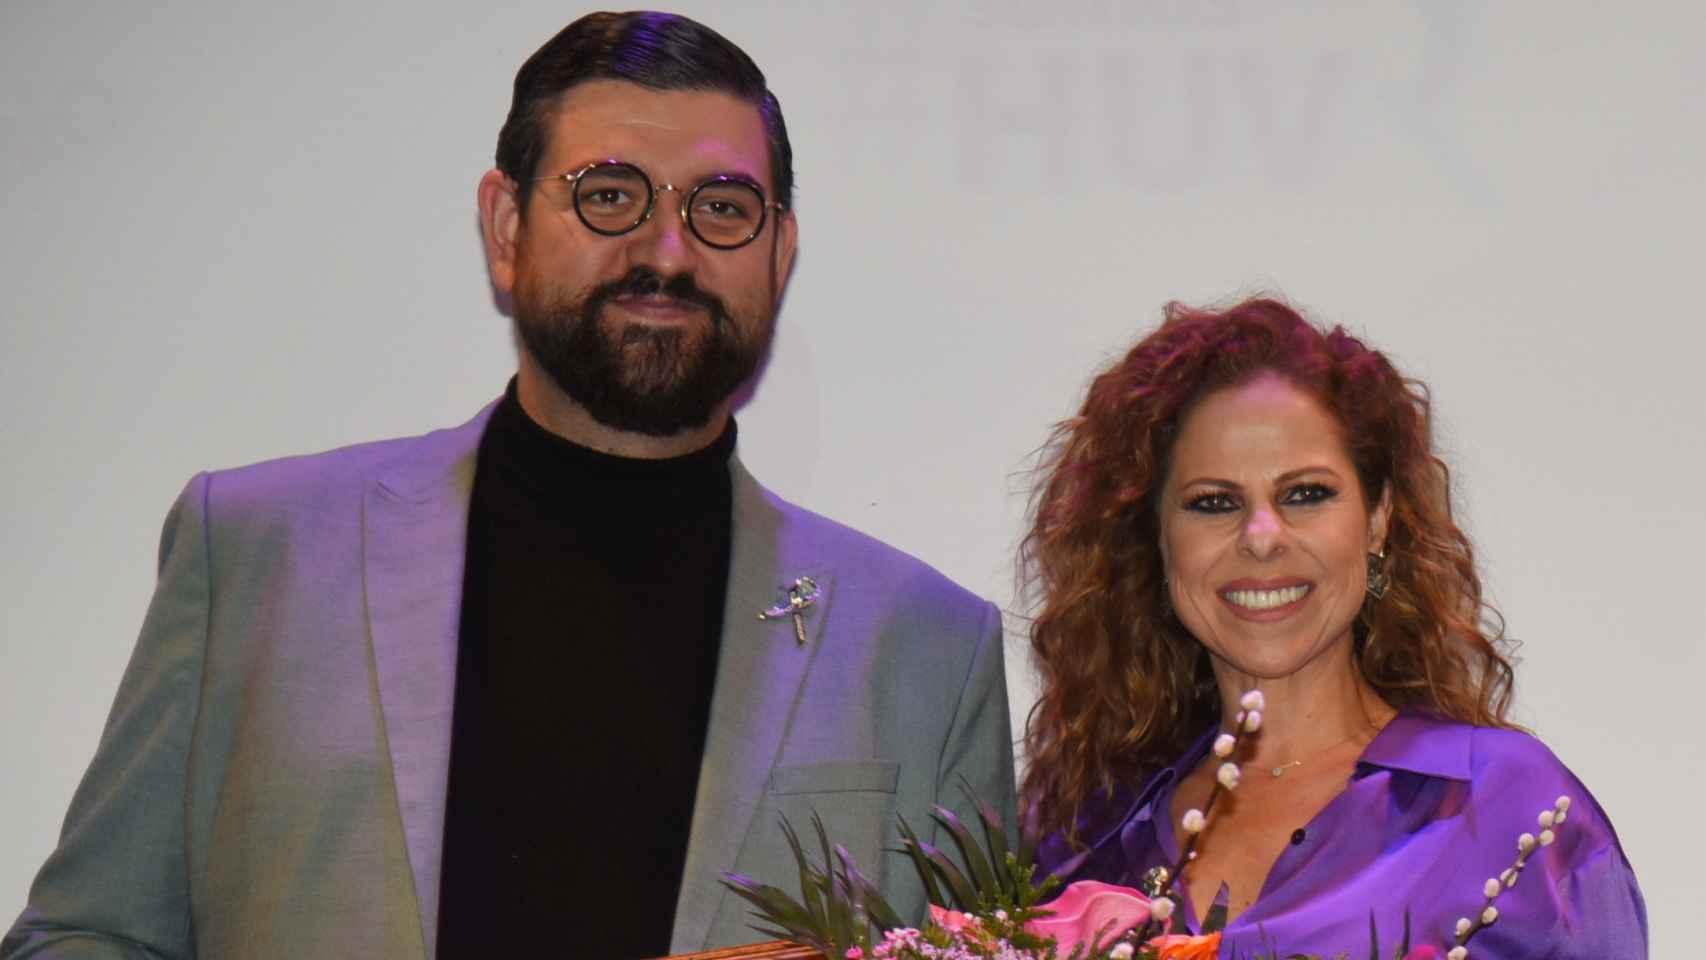 Manu Sánchez y Pastora Soler en un evento benéfico contra el cáncer en Coria del Río.